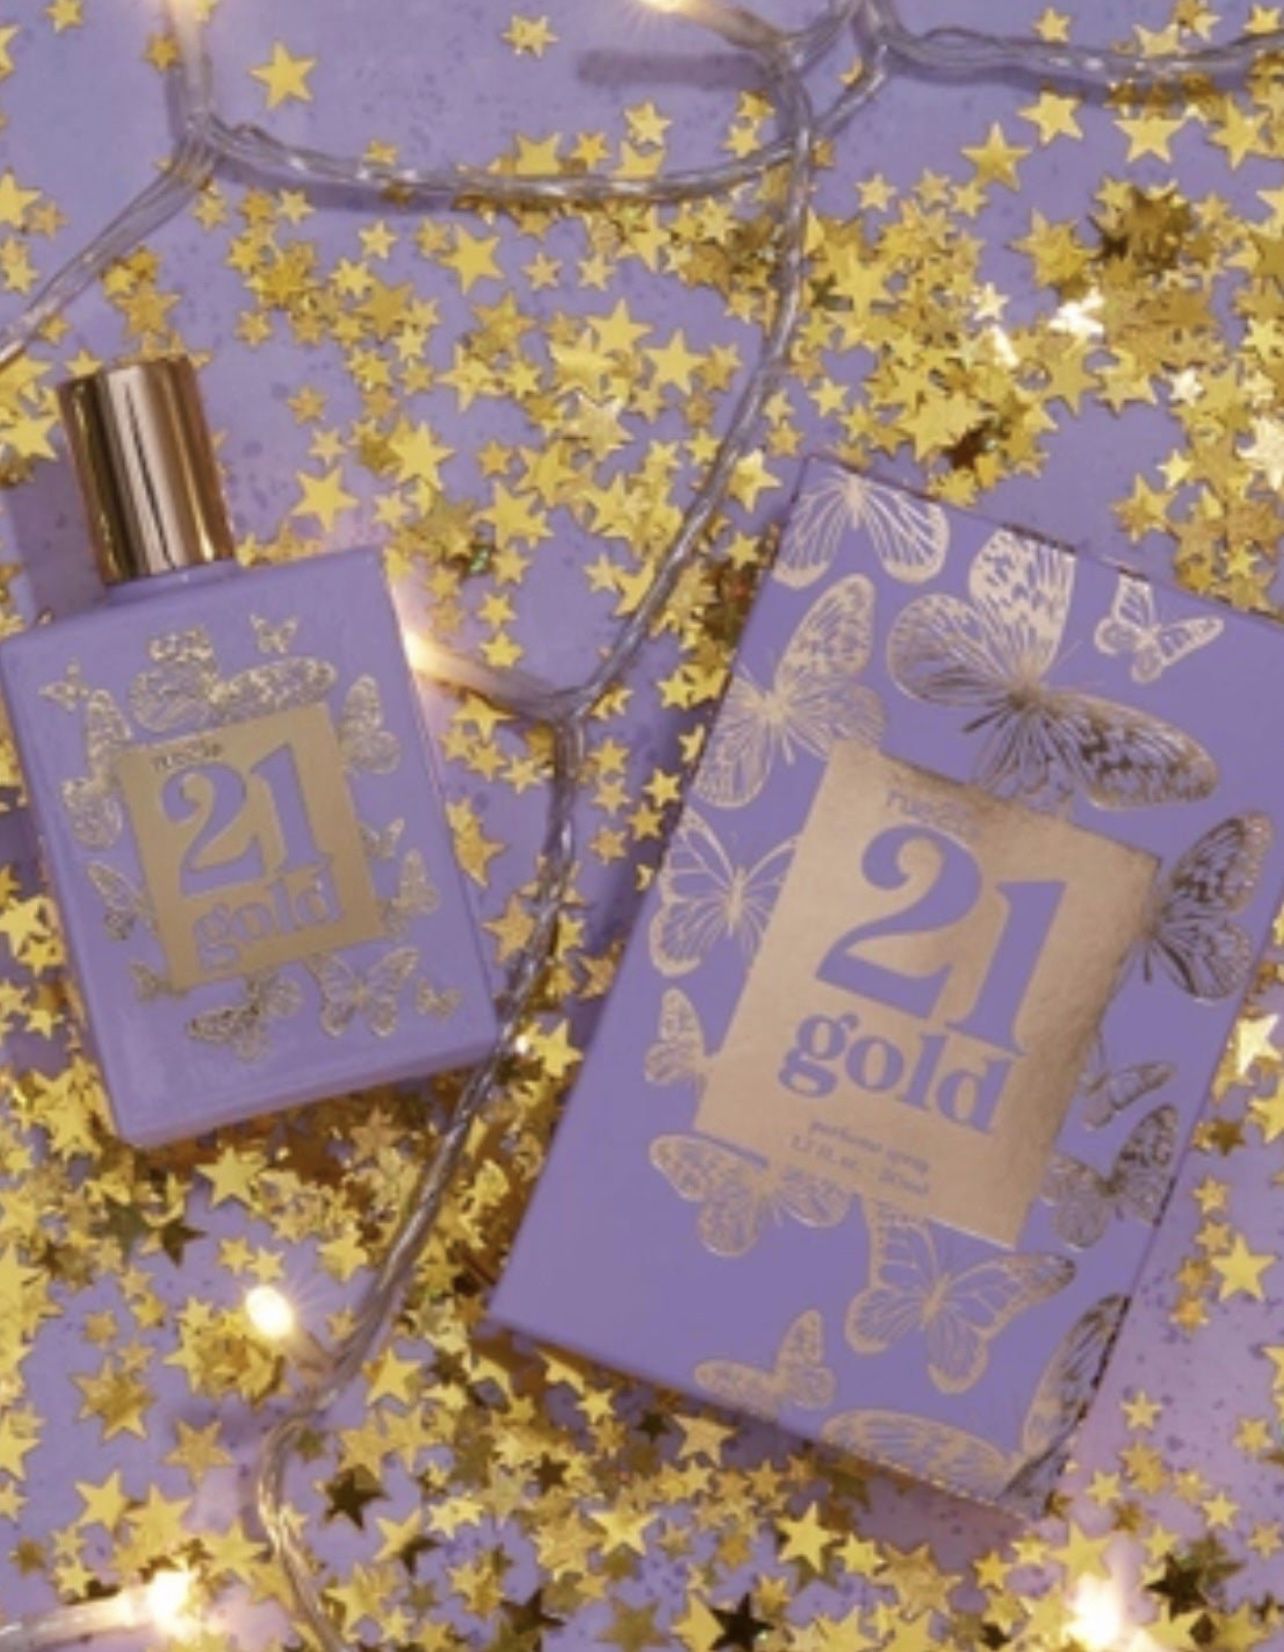 21 Gold Fragrance (10 Bottles Only)